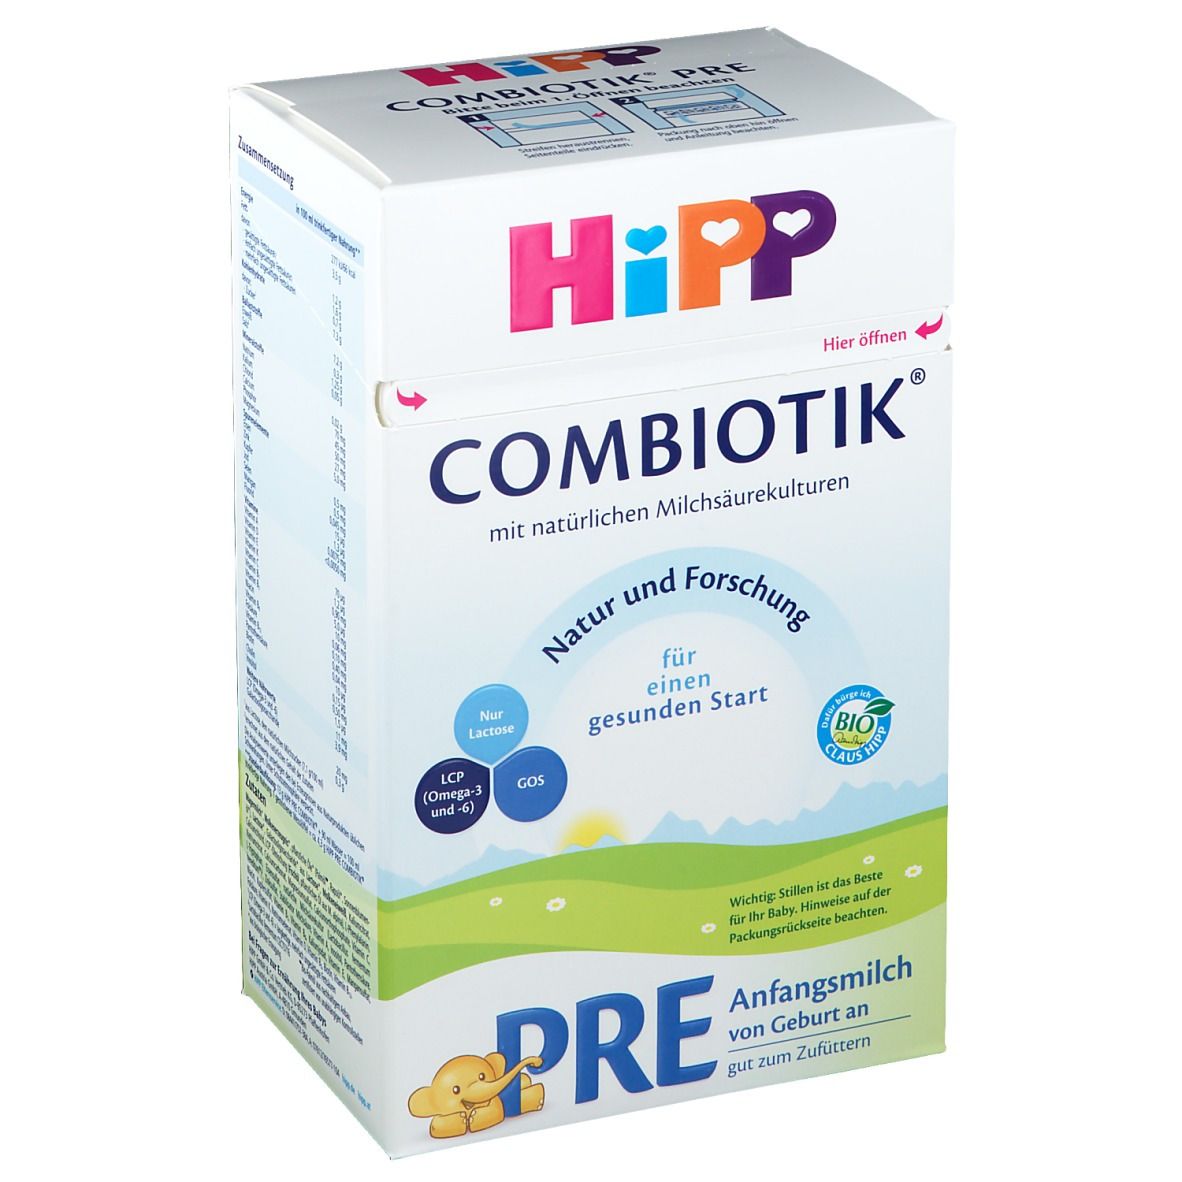 Hipp Bio Combiotik Pre Anfangsmilch von Geburt an